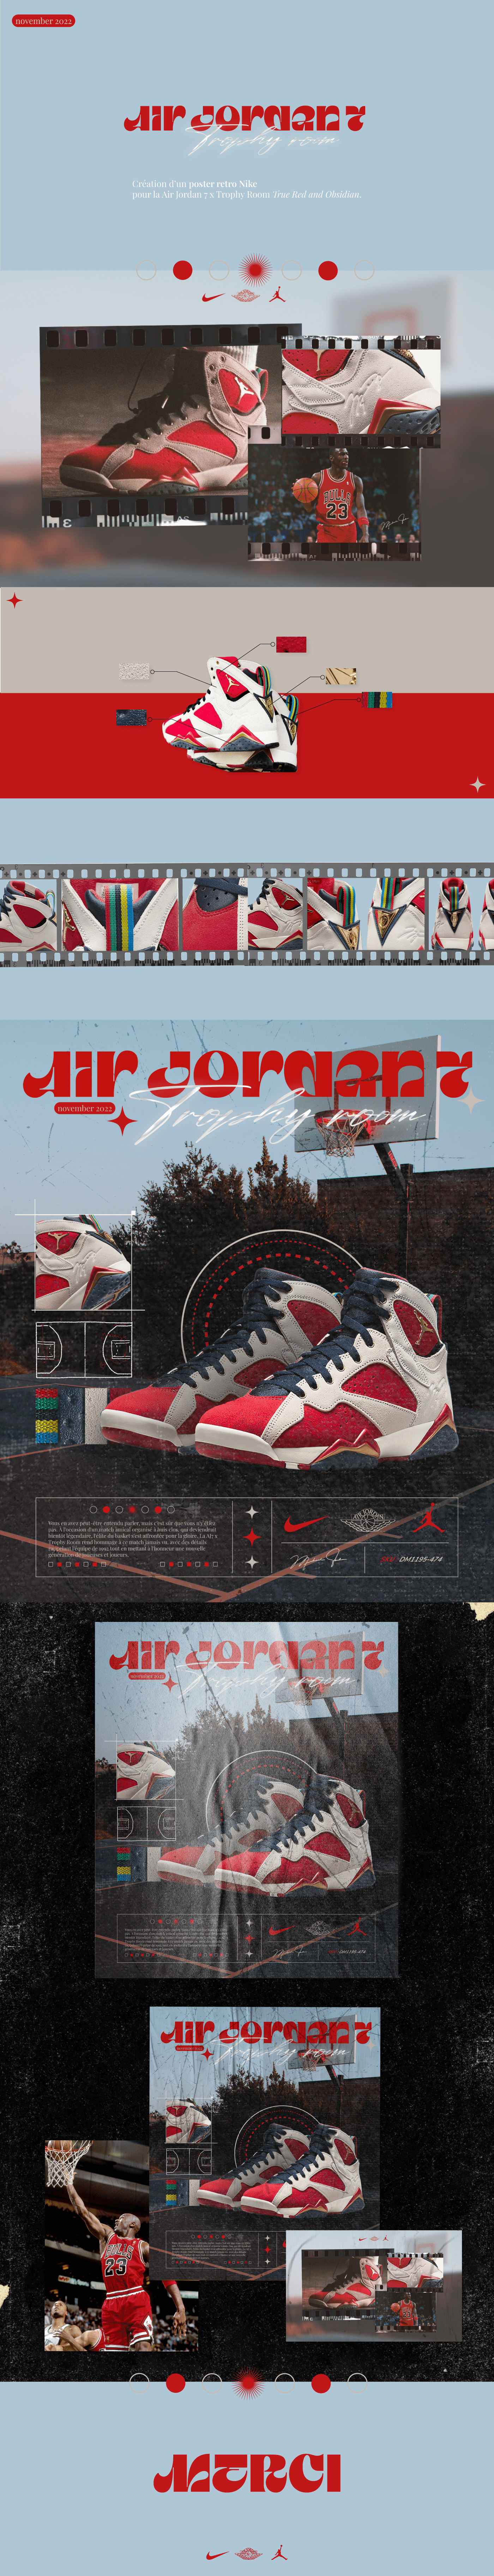 Nike Nike Shoes poster air jordan sneakers Retro basketball design